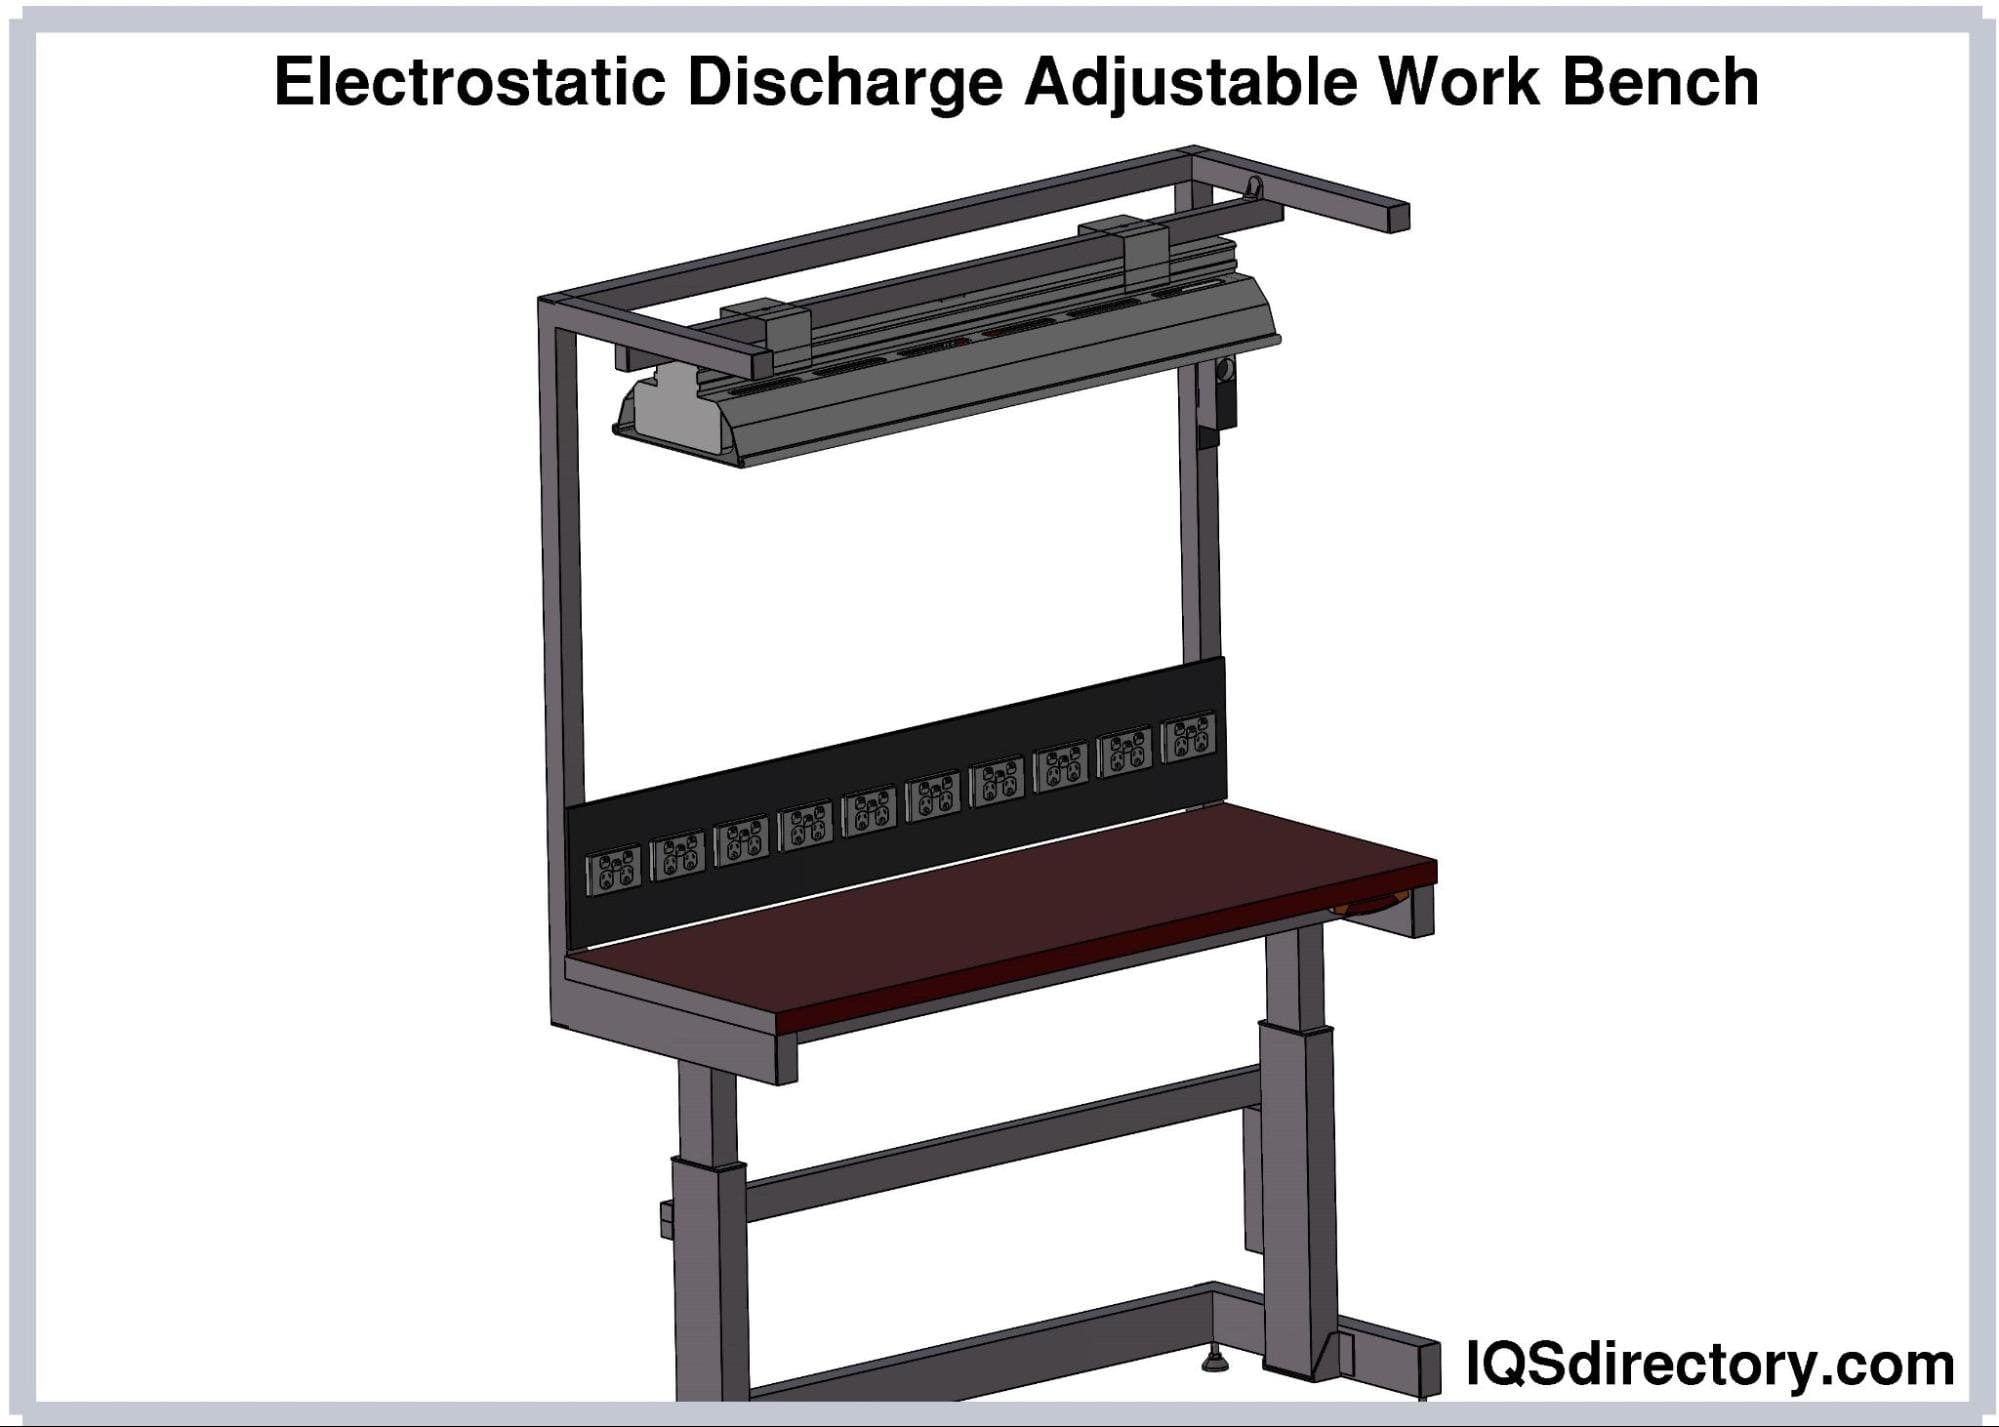 Electrostatic Discharge Adjustable Work Bench